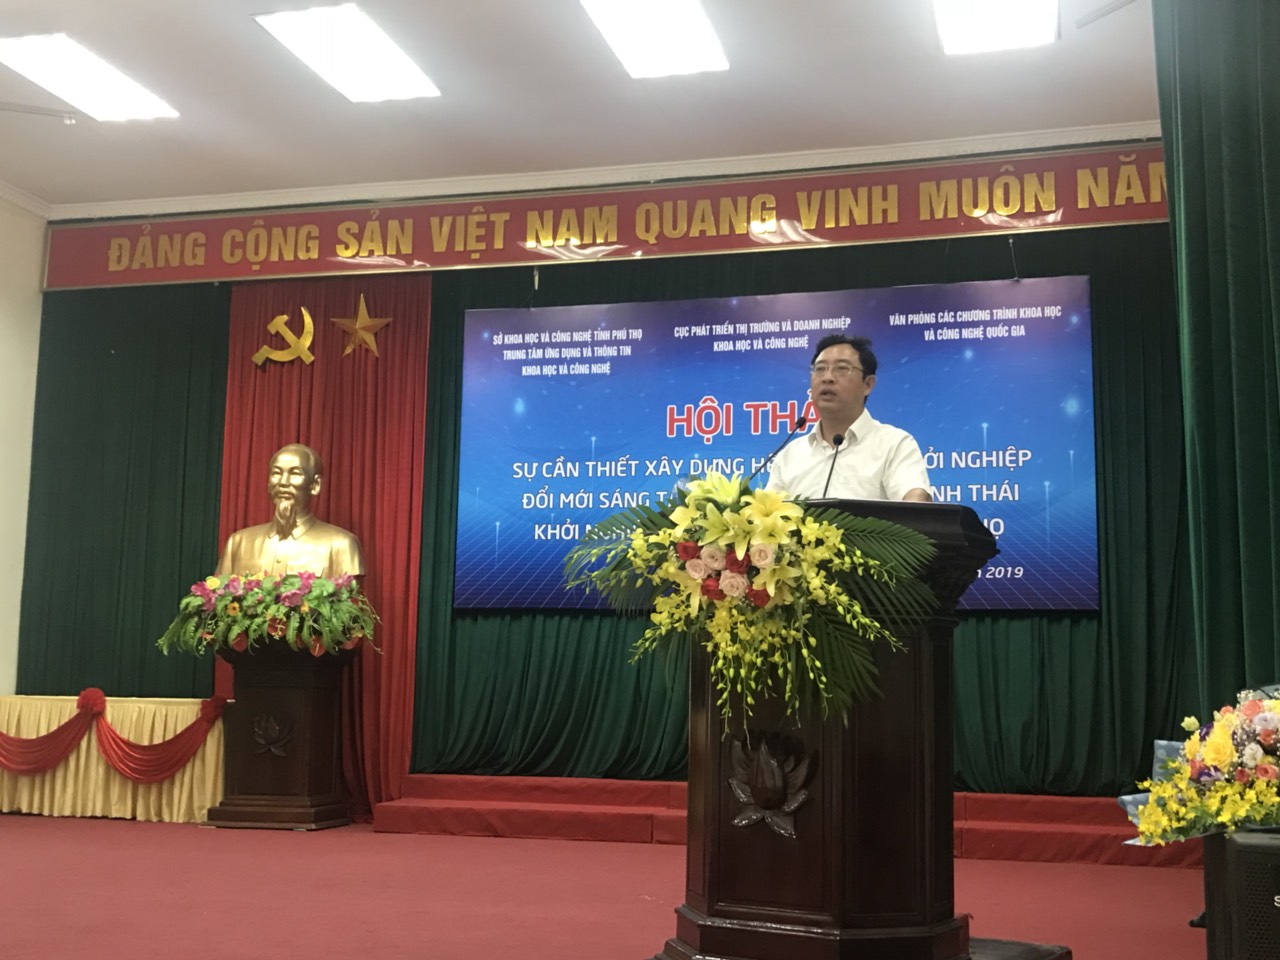 Ông Phạm Hồng Quất tại buổi  hội thảo về hệ sinh thái khởi nghiệp đổi mới sáng tạo ở Phú Thọ | Ảnh: BTC